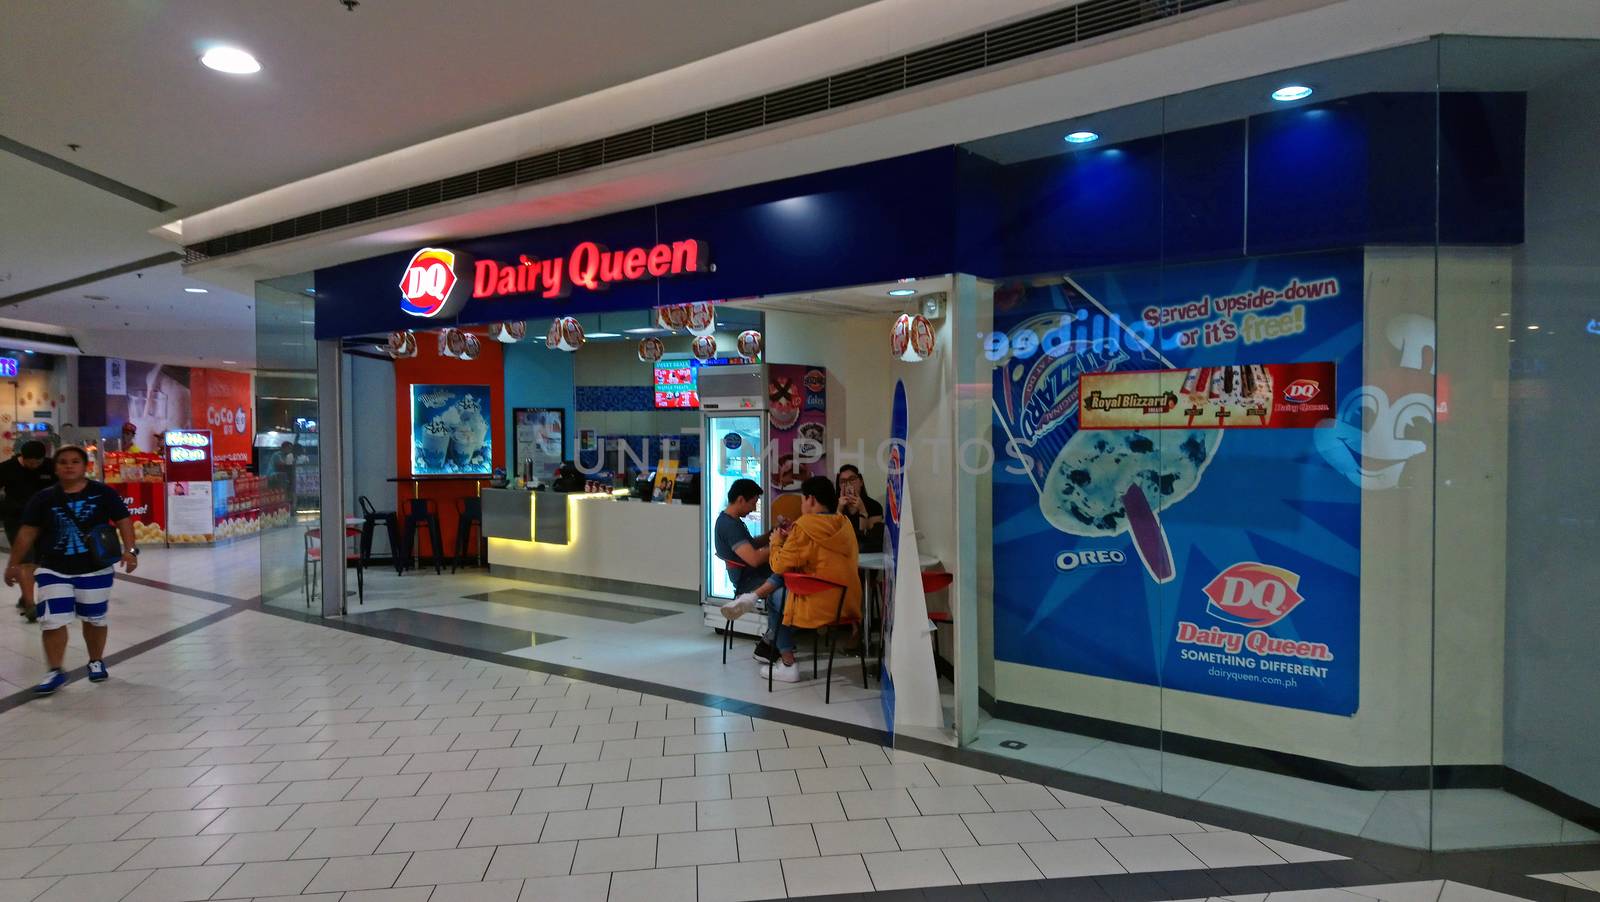 Dairy Queen ice cream facade at SM Santa Mesa in Quezon City, Ph by imwaltersy